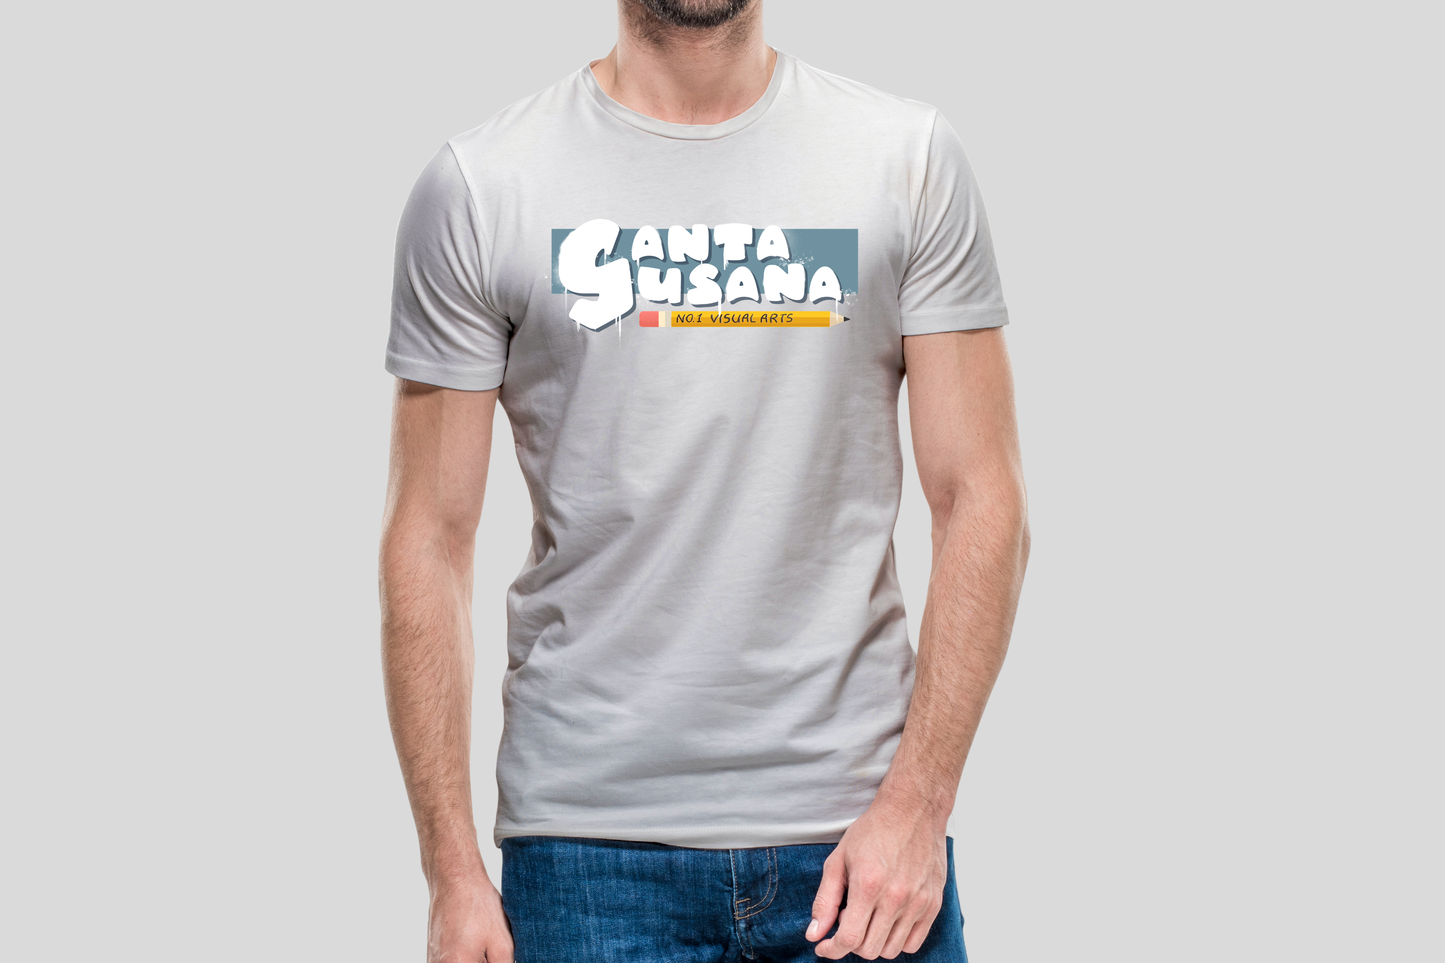 Santa Susana Visual Arts T-Shirts